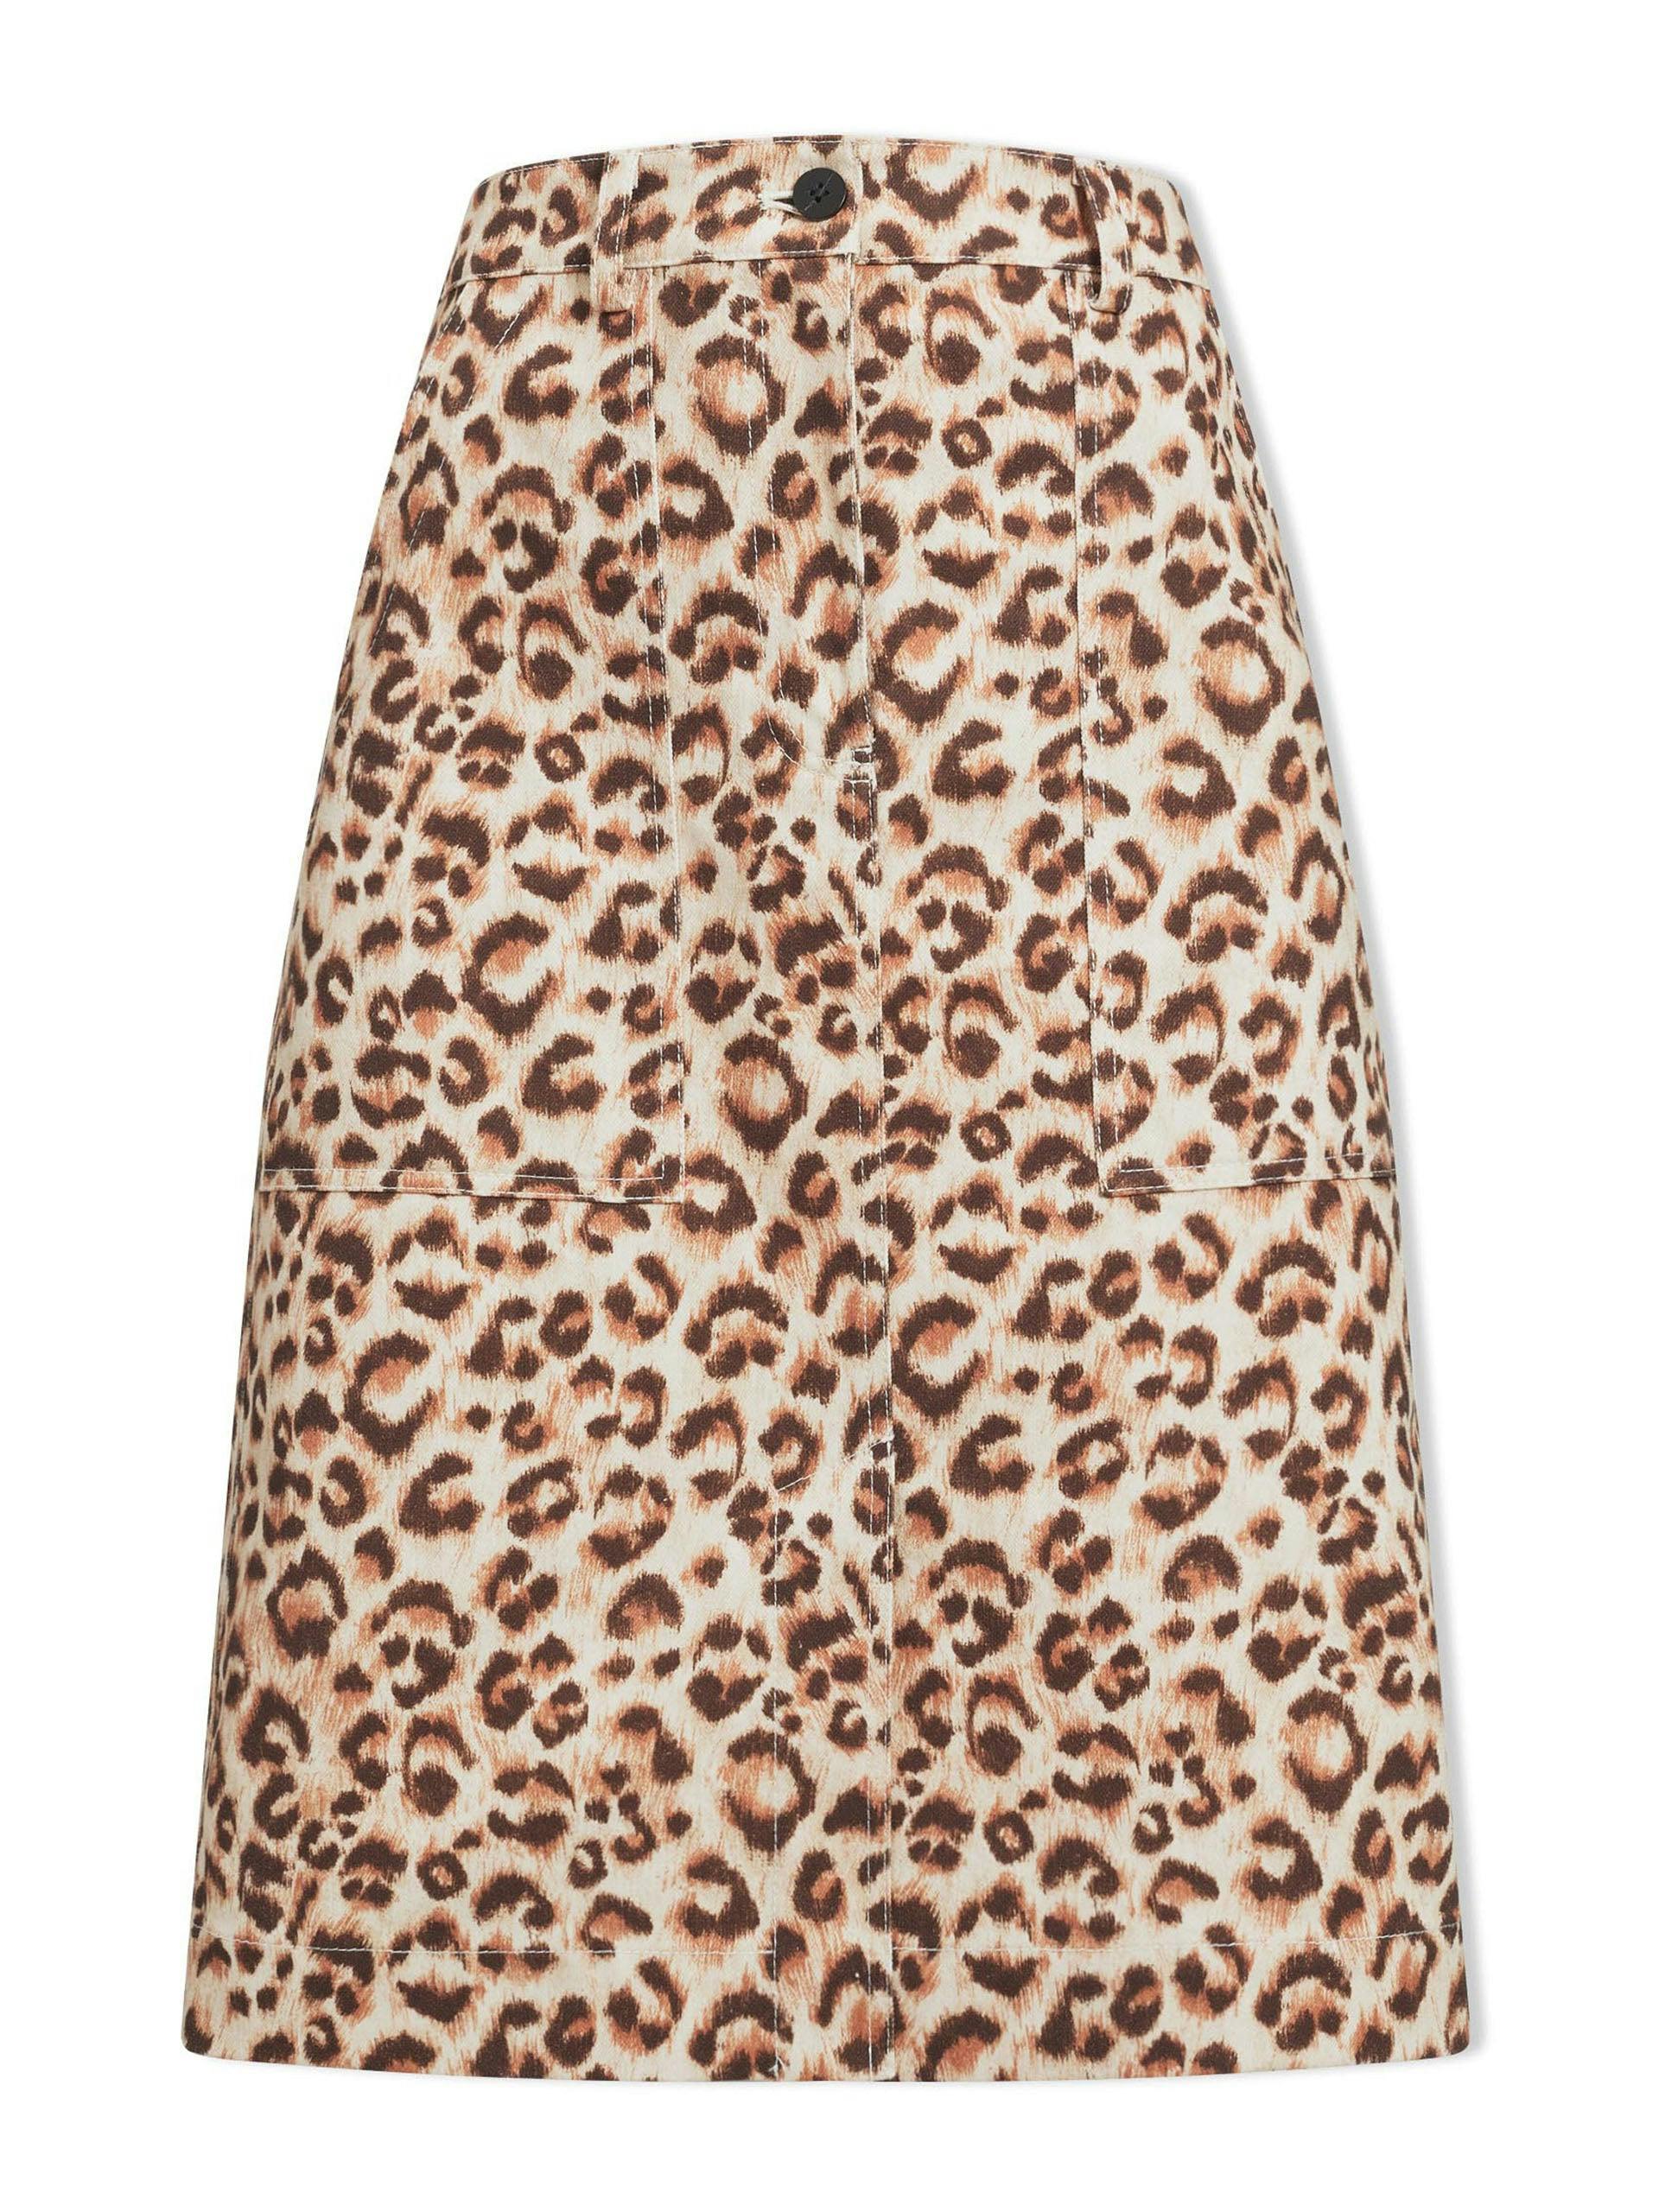 Sidney leopard print cotton twill pencil skirt